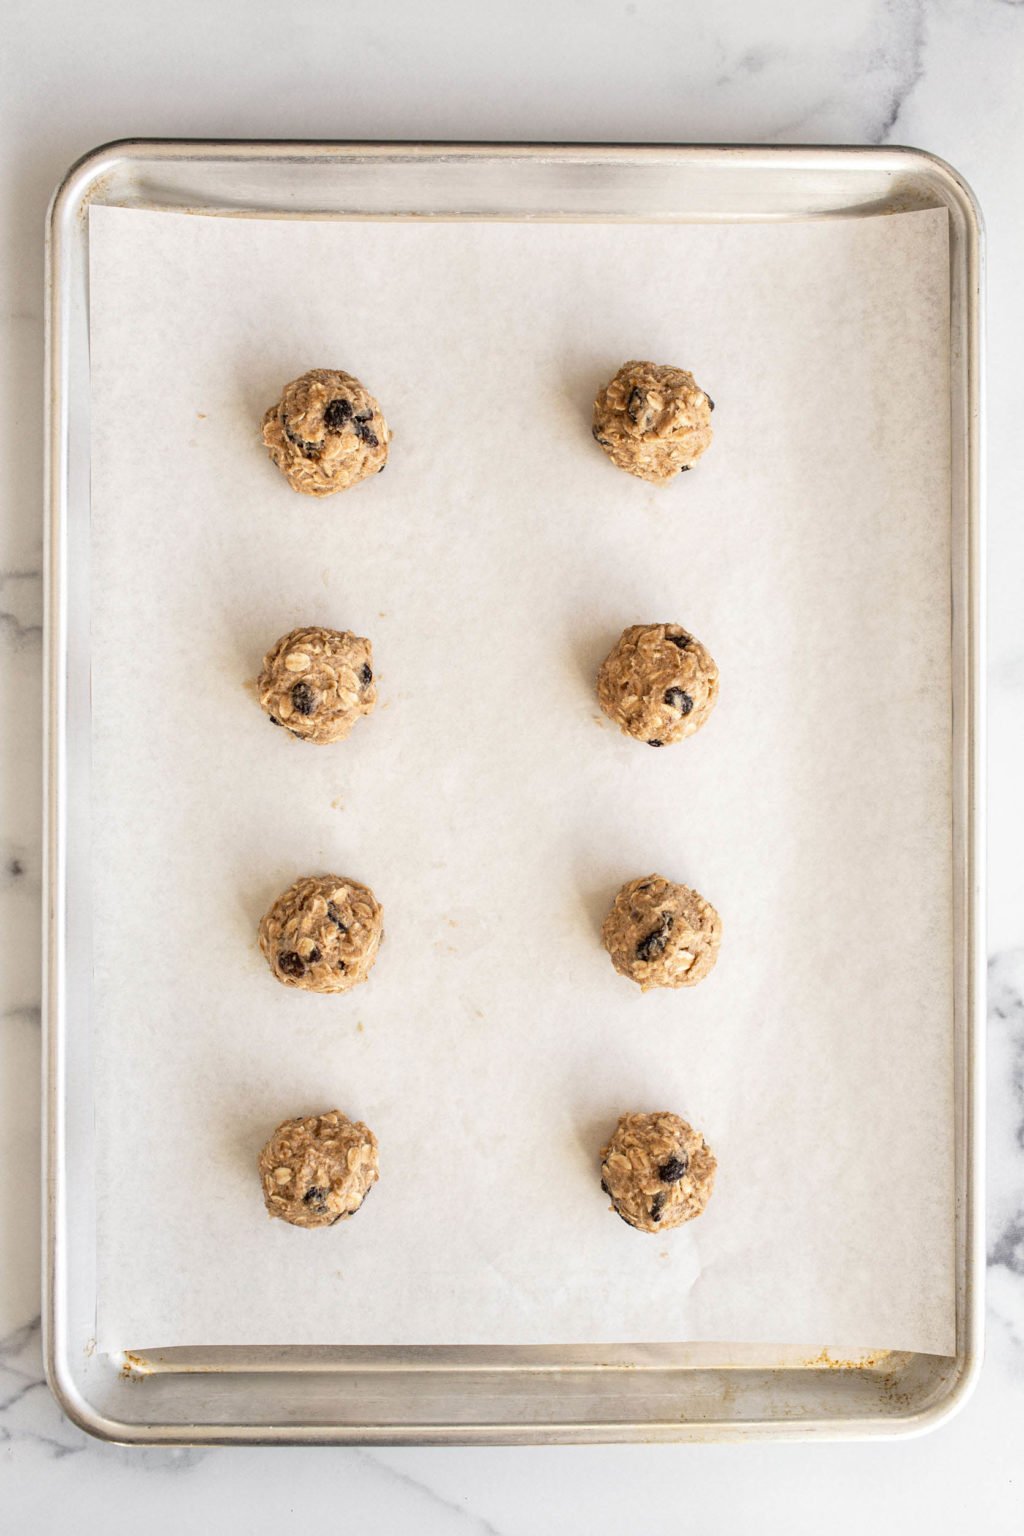 De belles boules rondes de pâte à biscuits reposent sur une plaque à pâtisserie recouverte de papier sulfurisé.